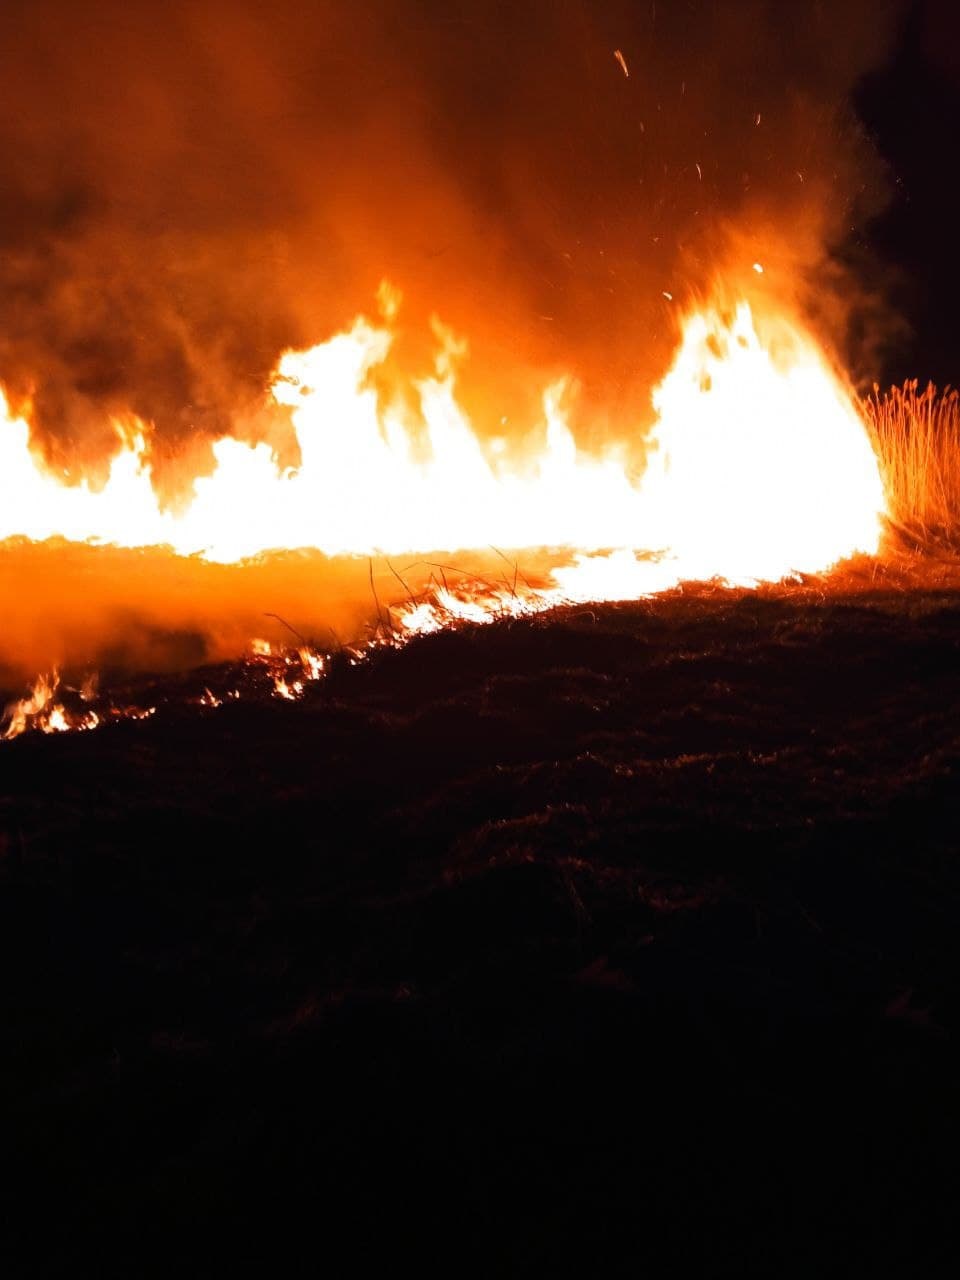 (ВИДЕО) В Кагульском районе произошел пожар. Огонь уничтожил 100 га растительности